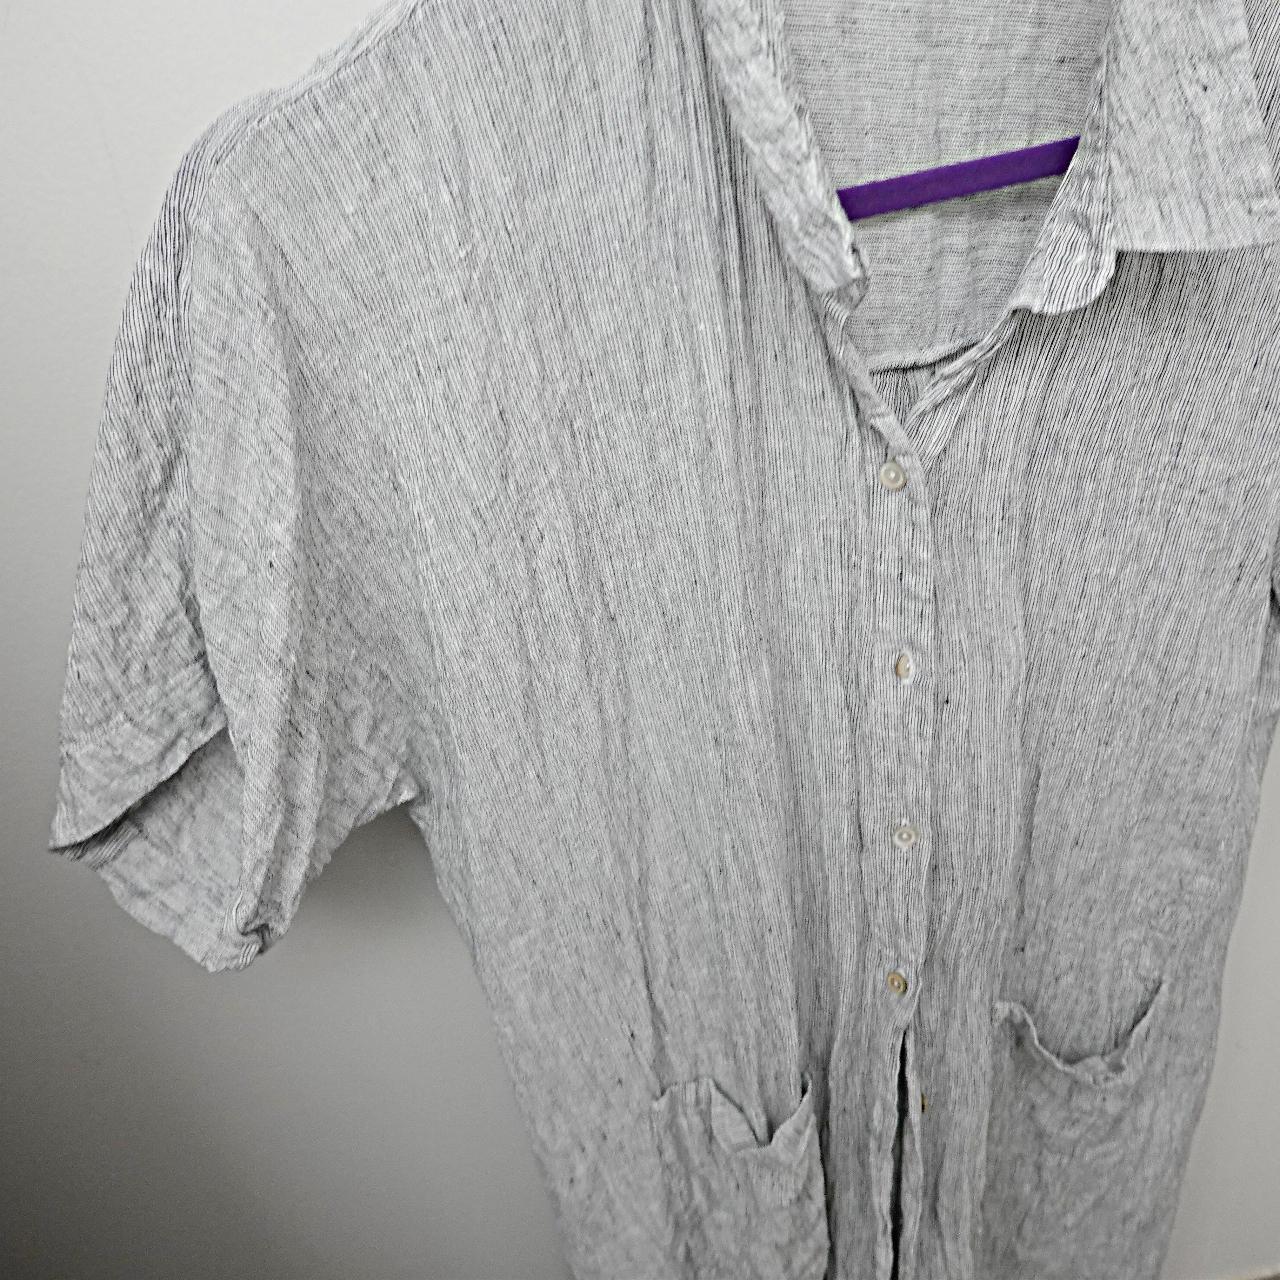 Eileen fisher organic linen shirt dress- petite... - Depop